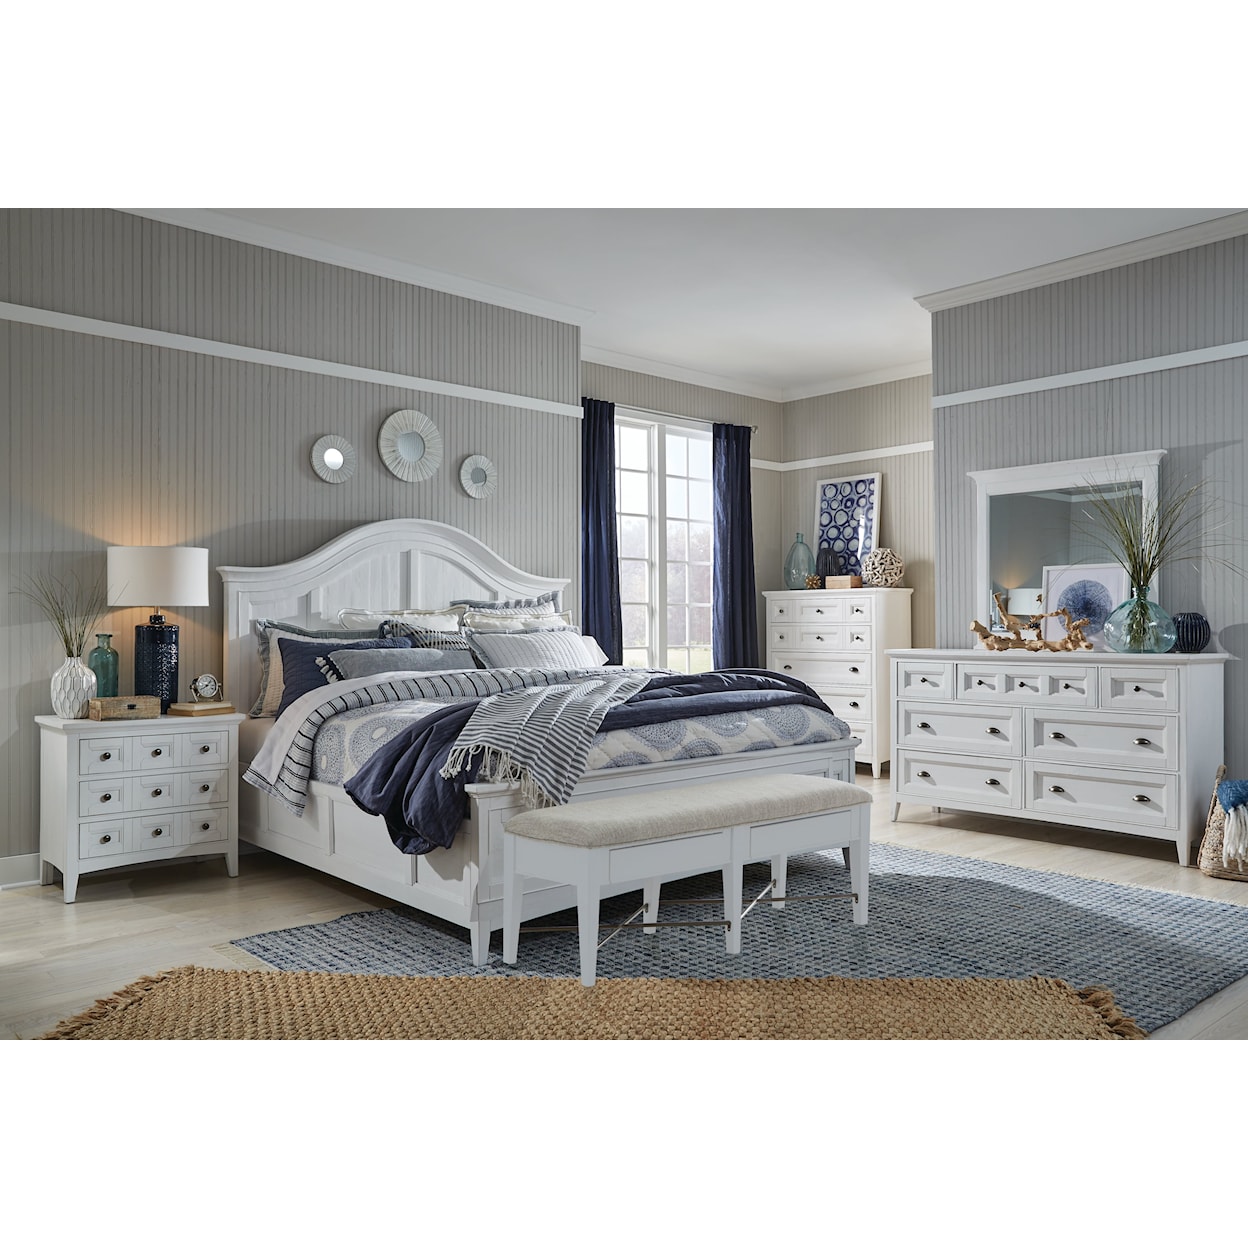 Magnussen Home Heron Cove Bedroom 4-Piece Queen Bedroom Set 